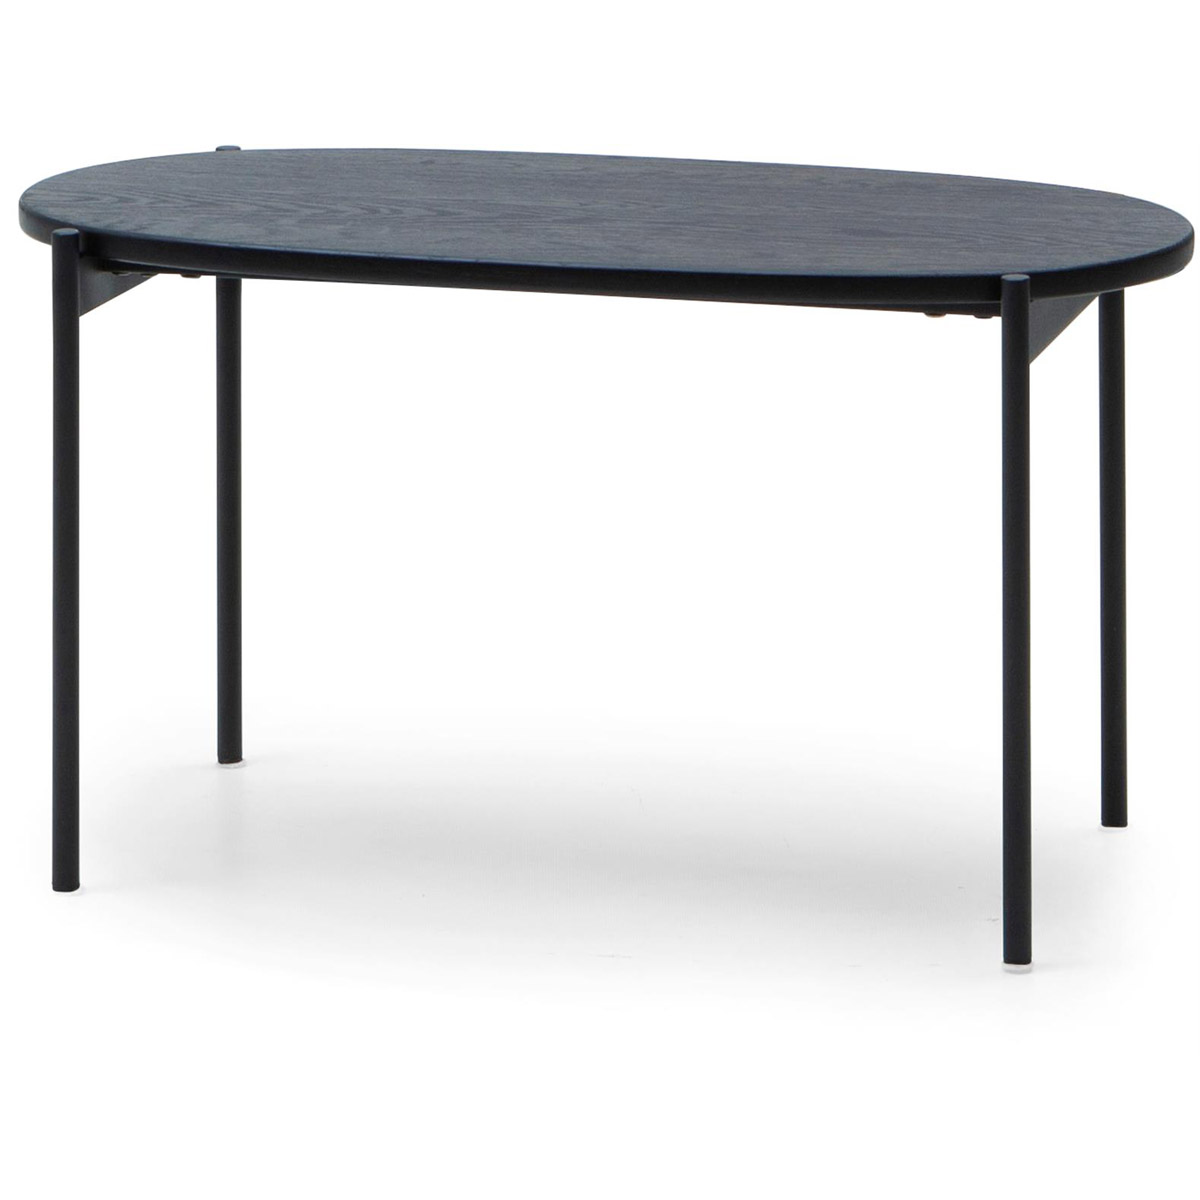 Skye ovalt litet soffbord svart